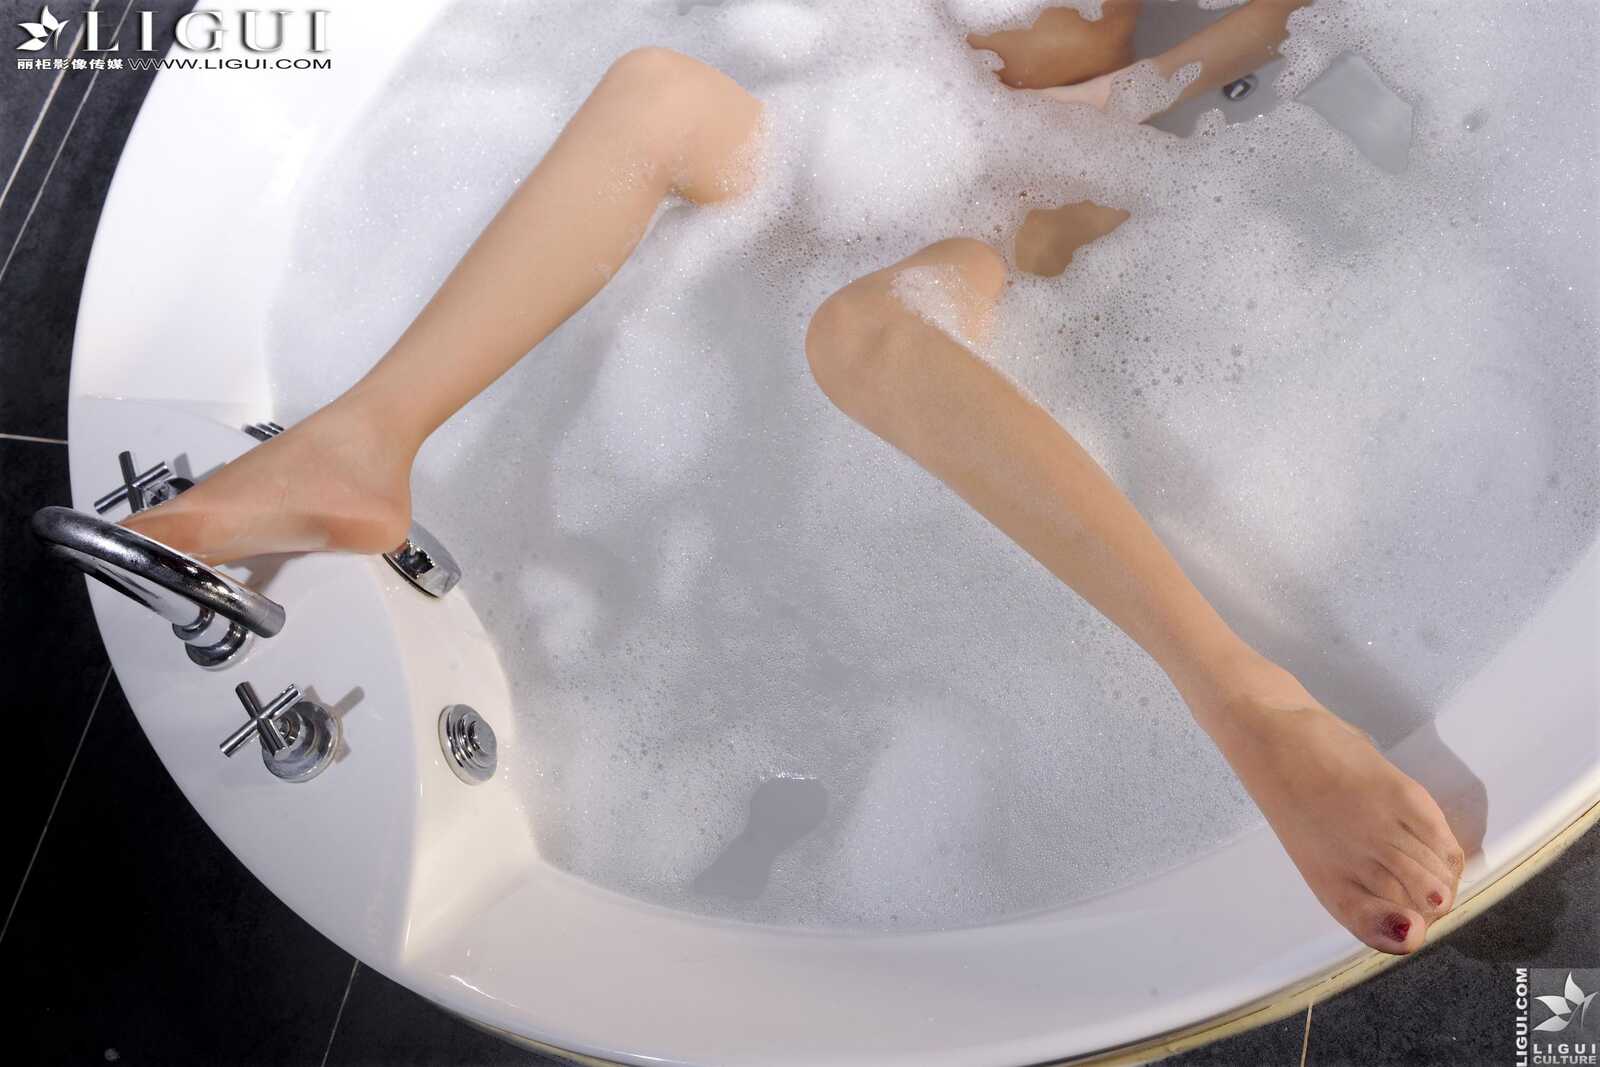 [丽柜LiGui] Model 文欣《浴室浴巾裹胸湿身》 美腿第4张